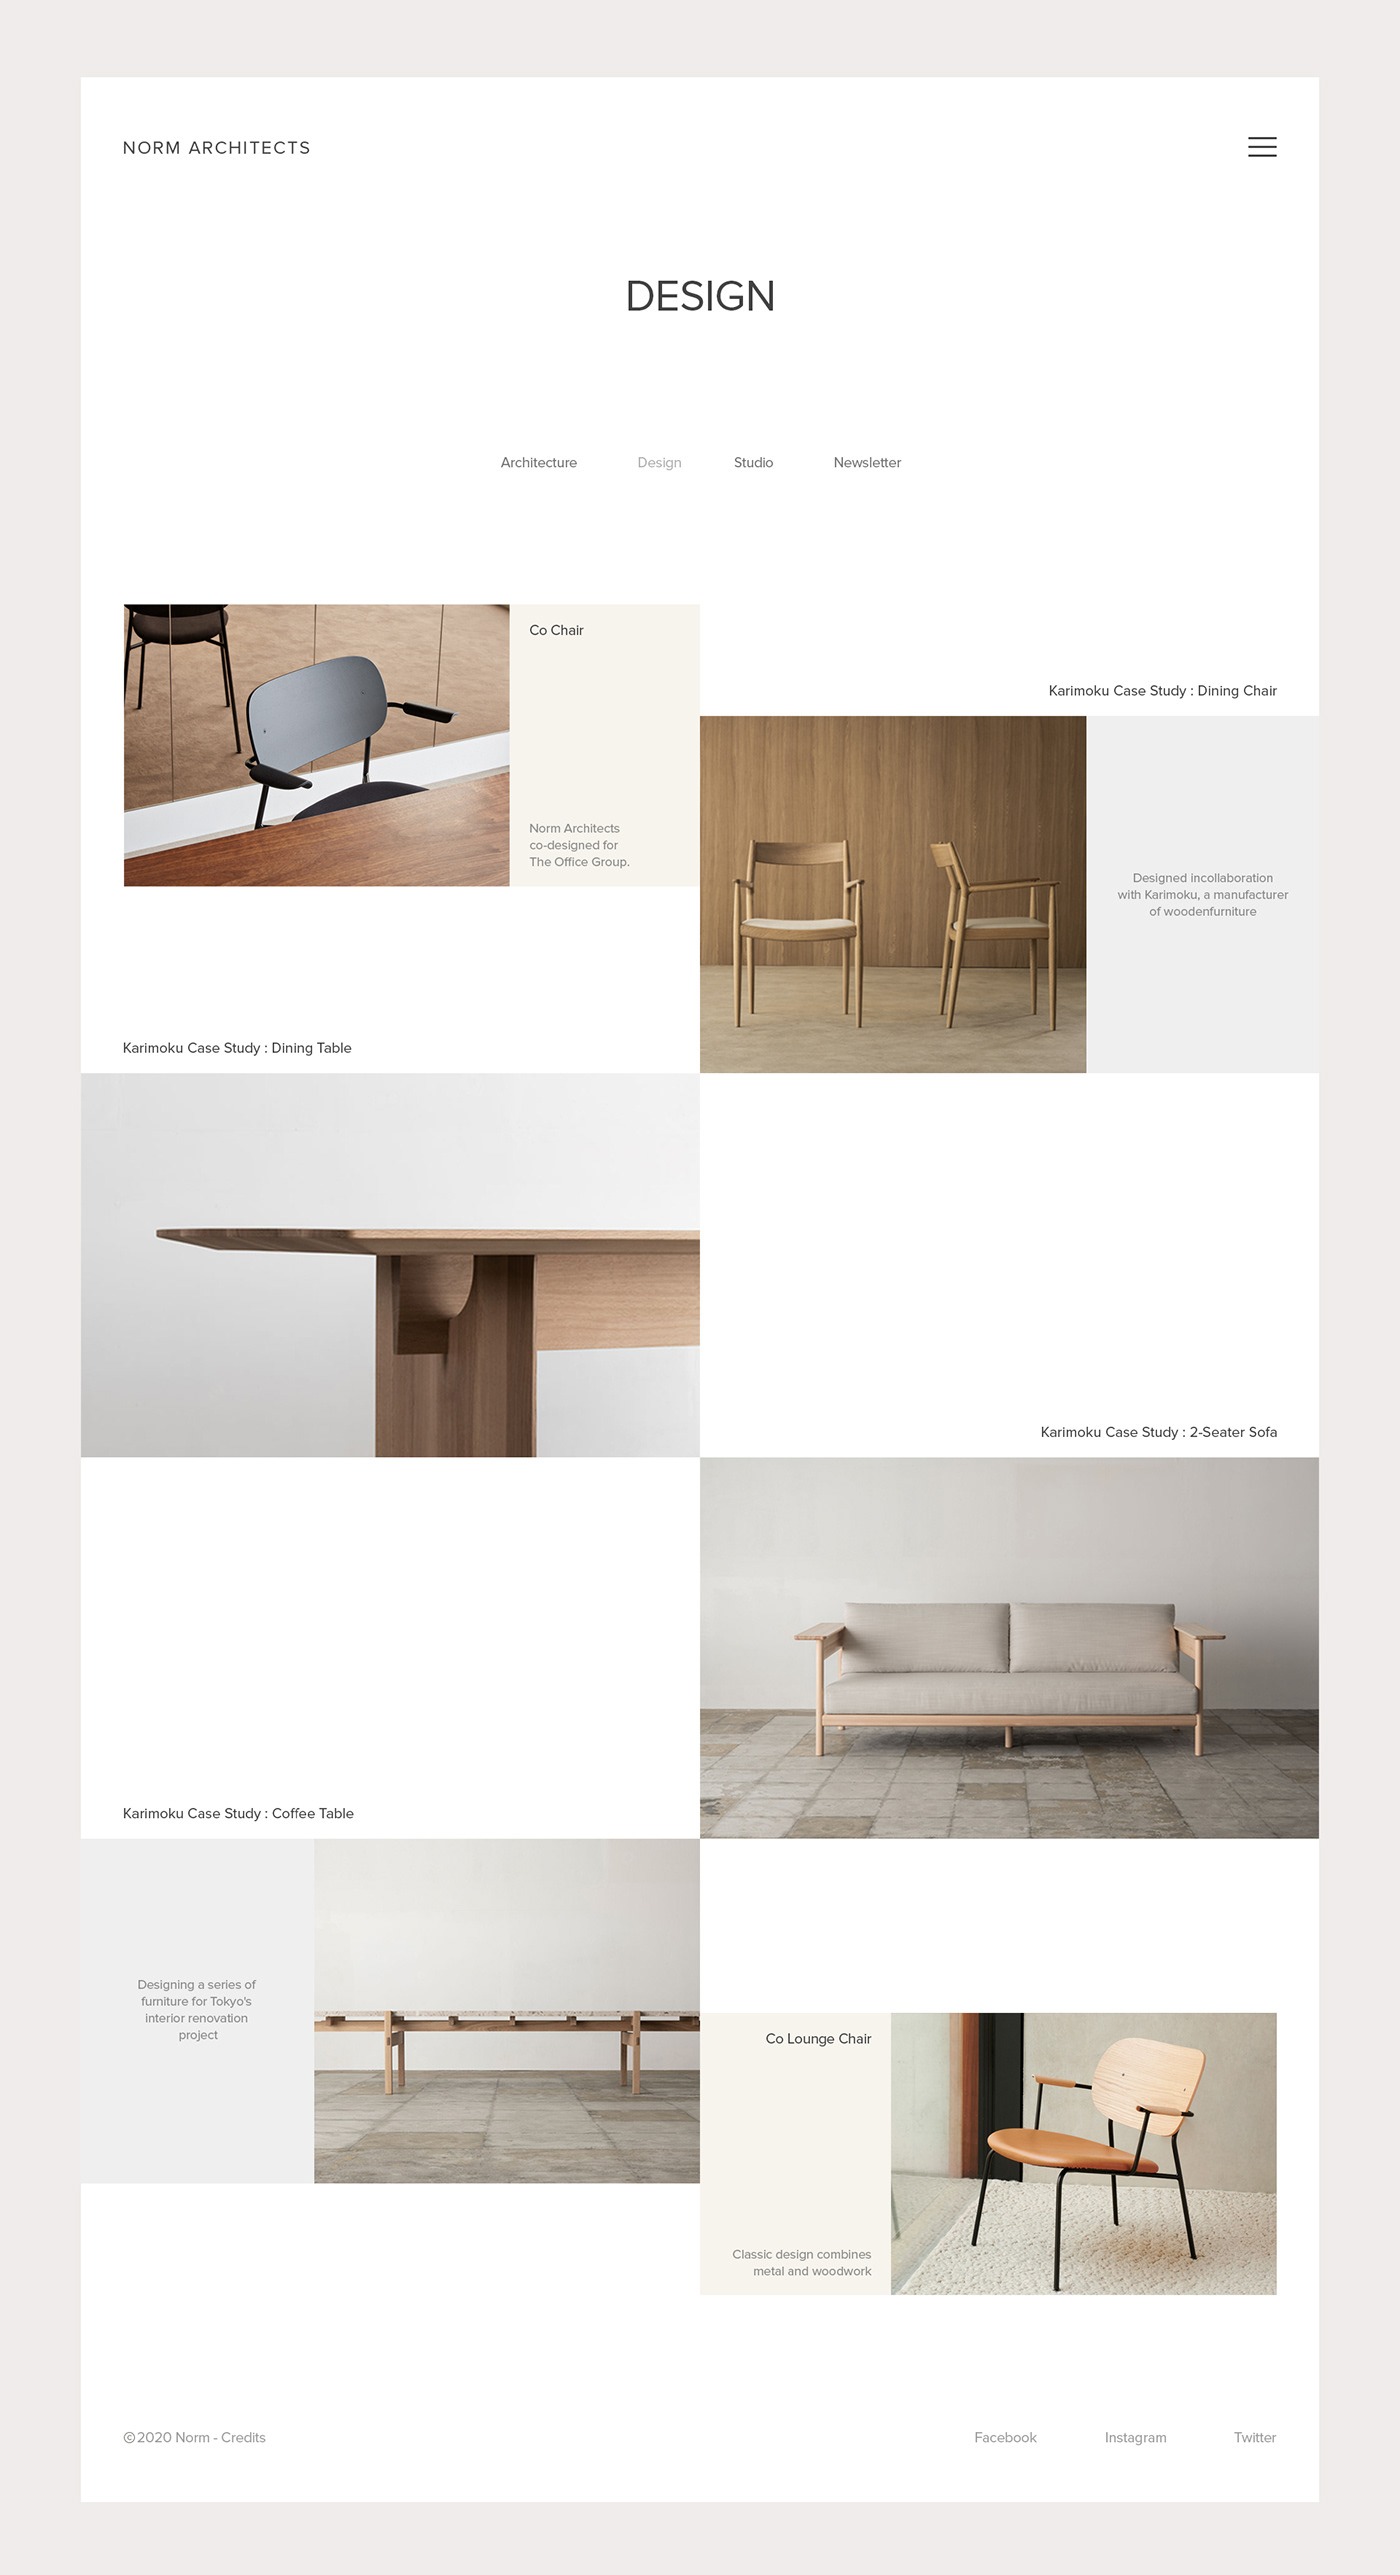 norm architects uiux denmark design Interior furniture hay kettal interaction alexander lervik